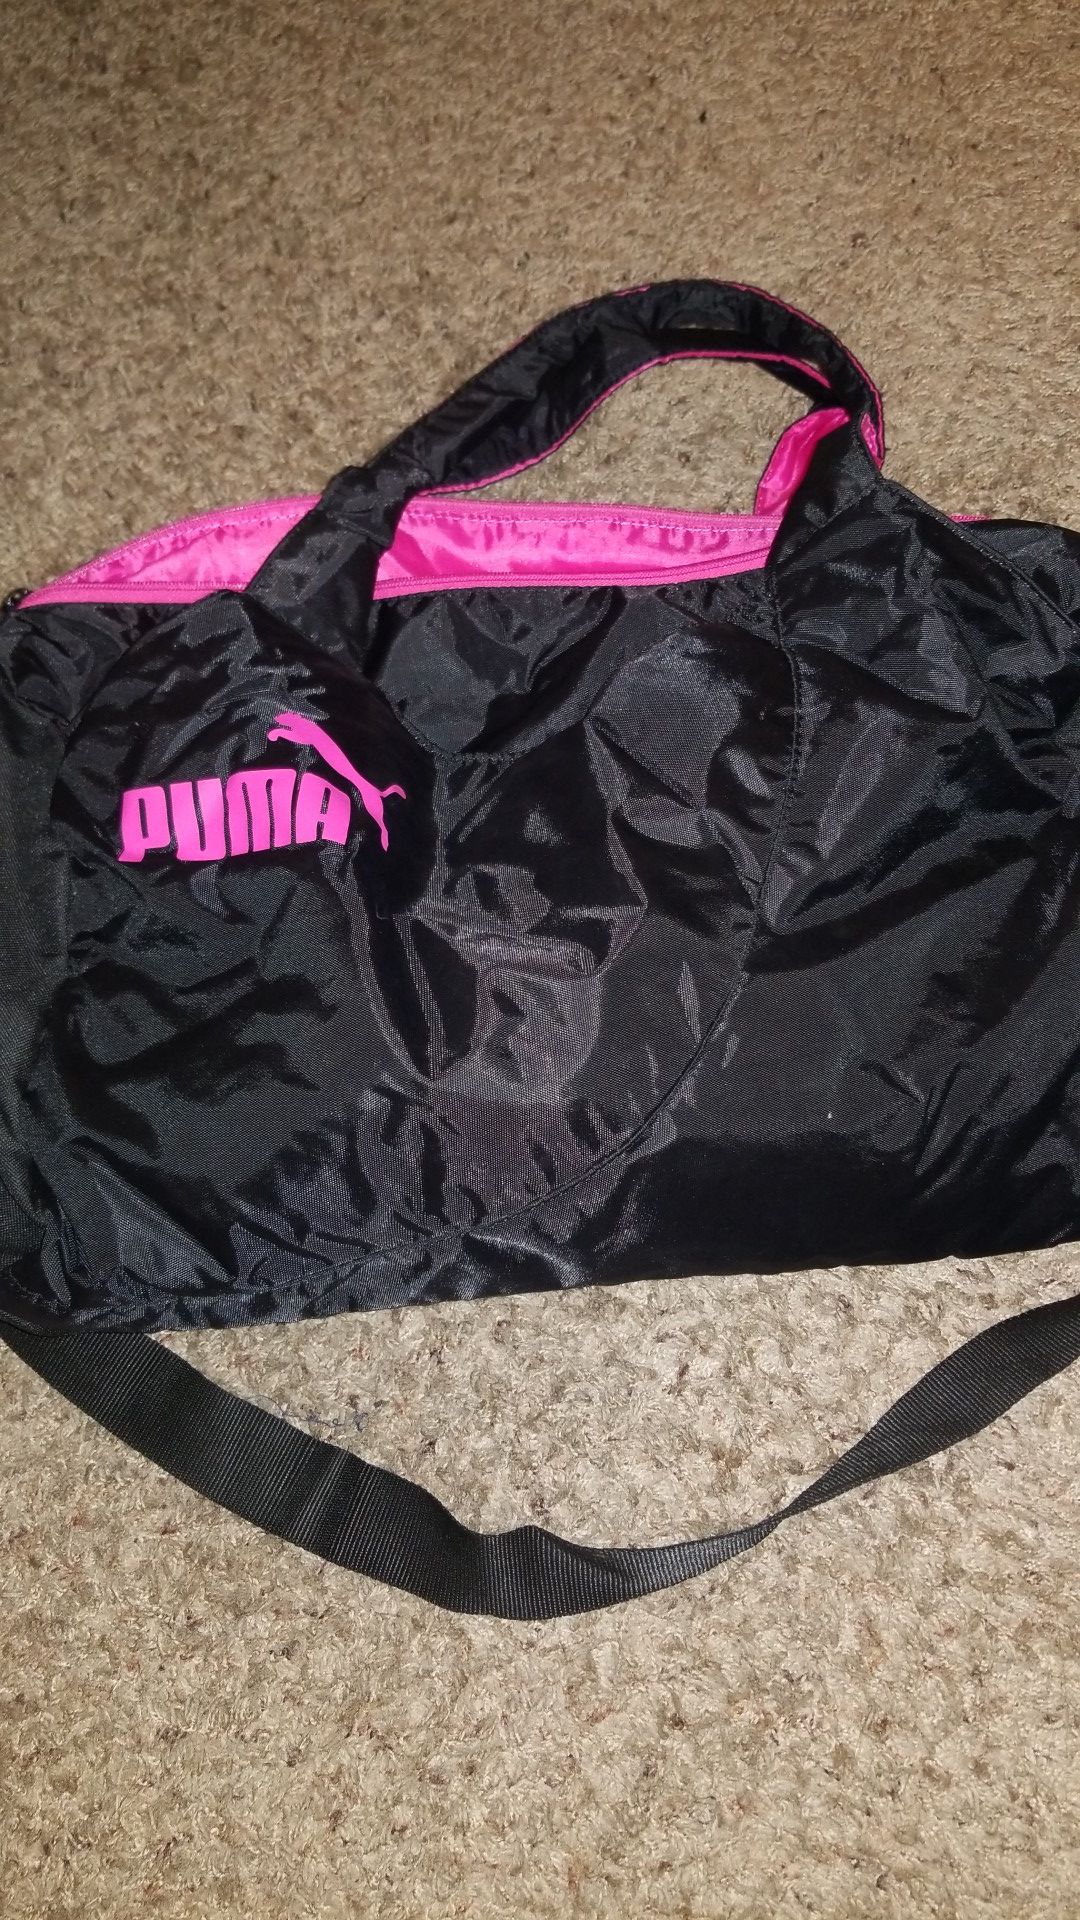 Puma Duffle Bag. Never Used